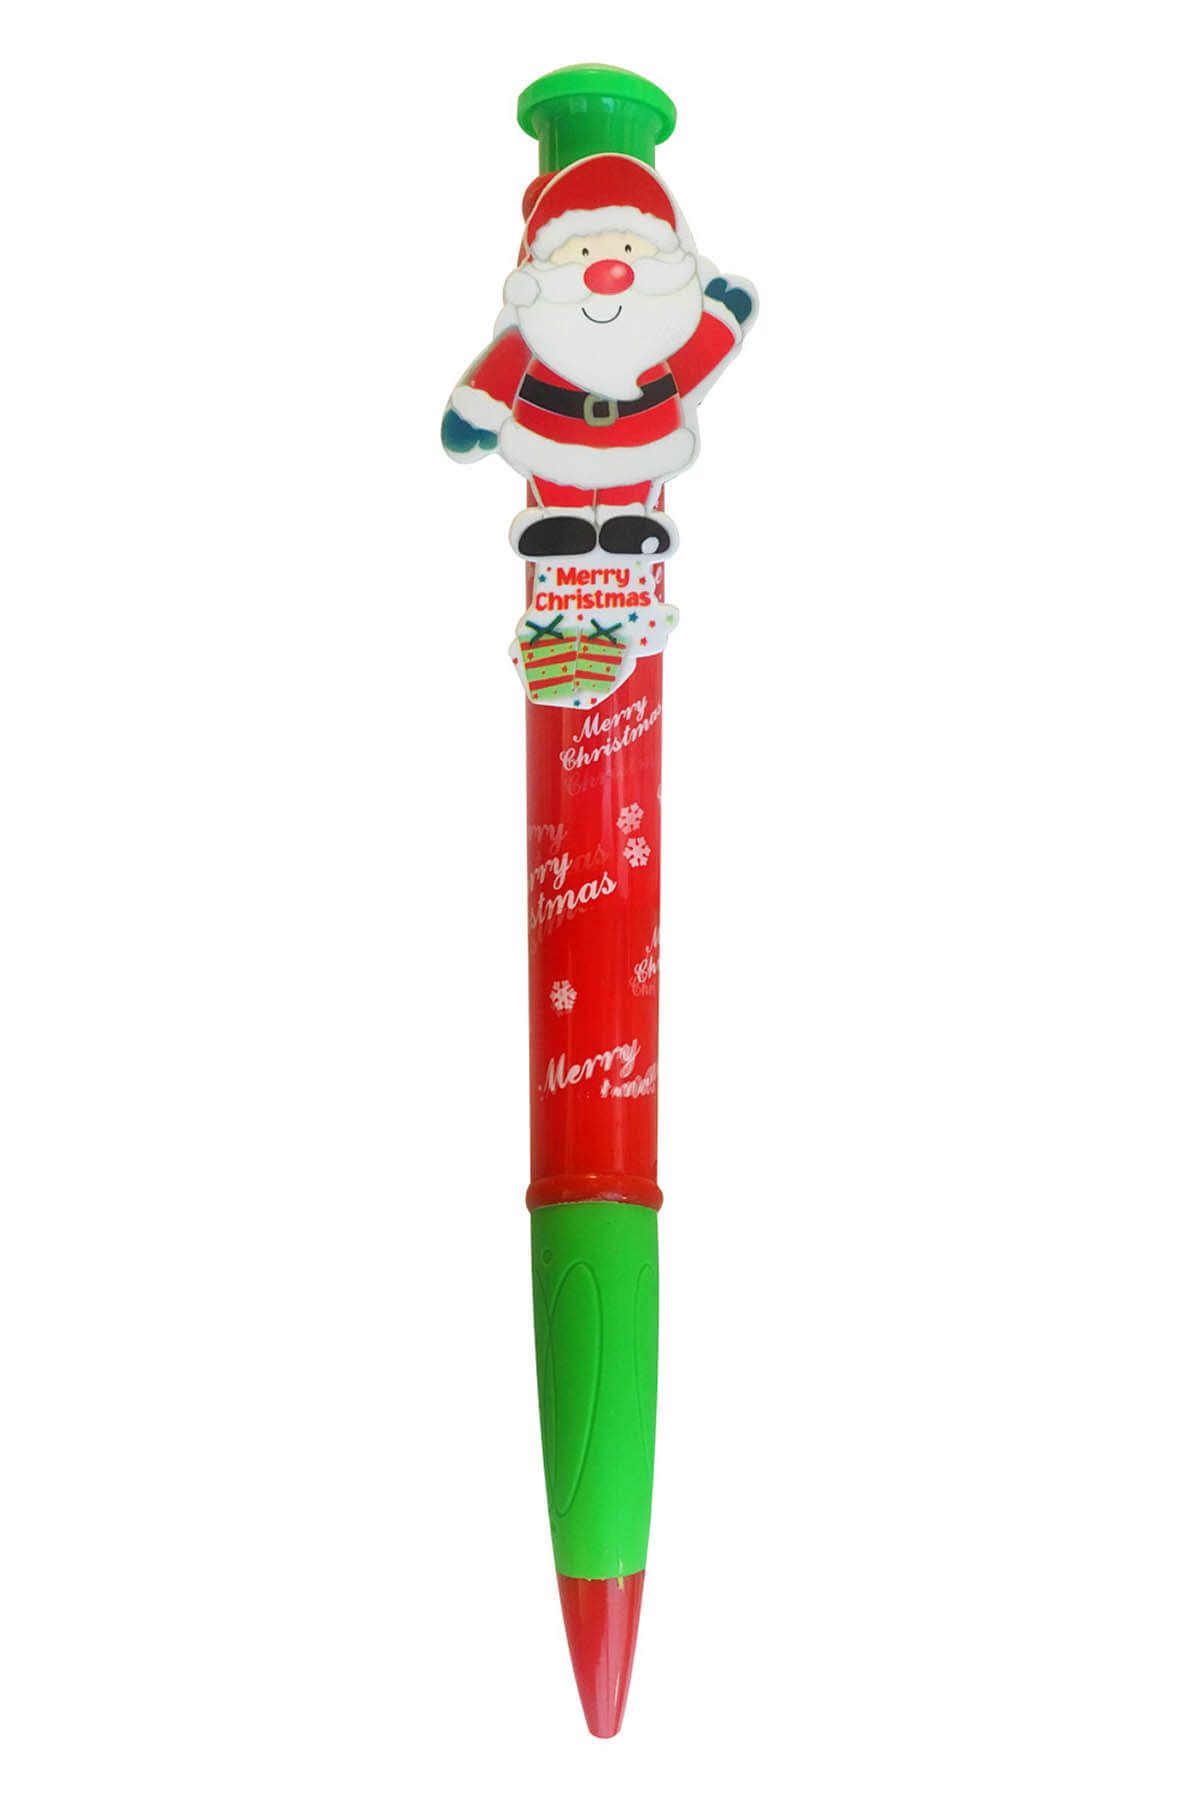 KullanAt Market Yılbaşı Noel Baba Hediyelik Kalem 3 x 28cm 1 Adet